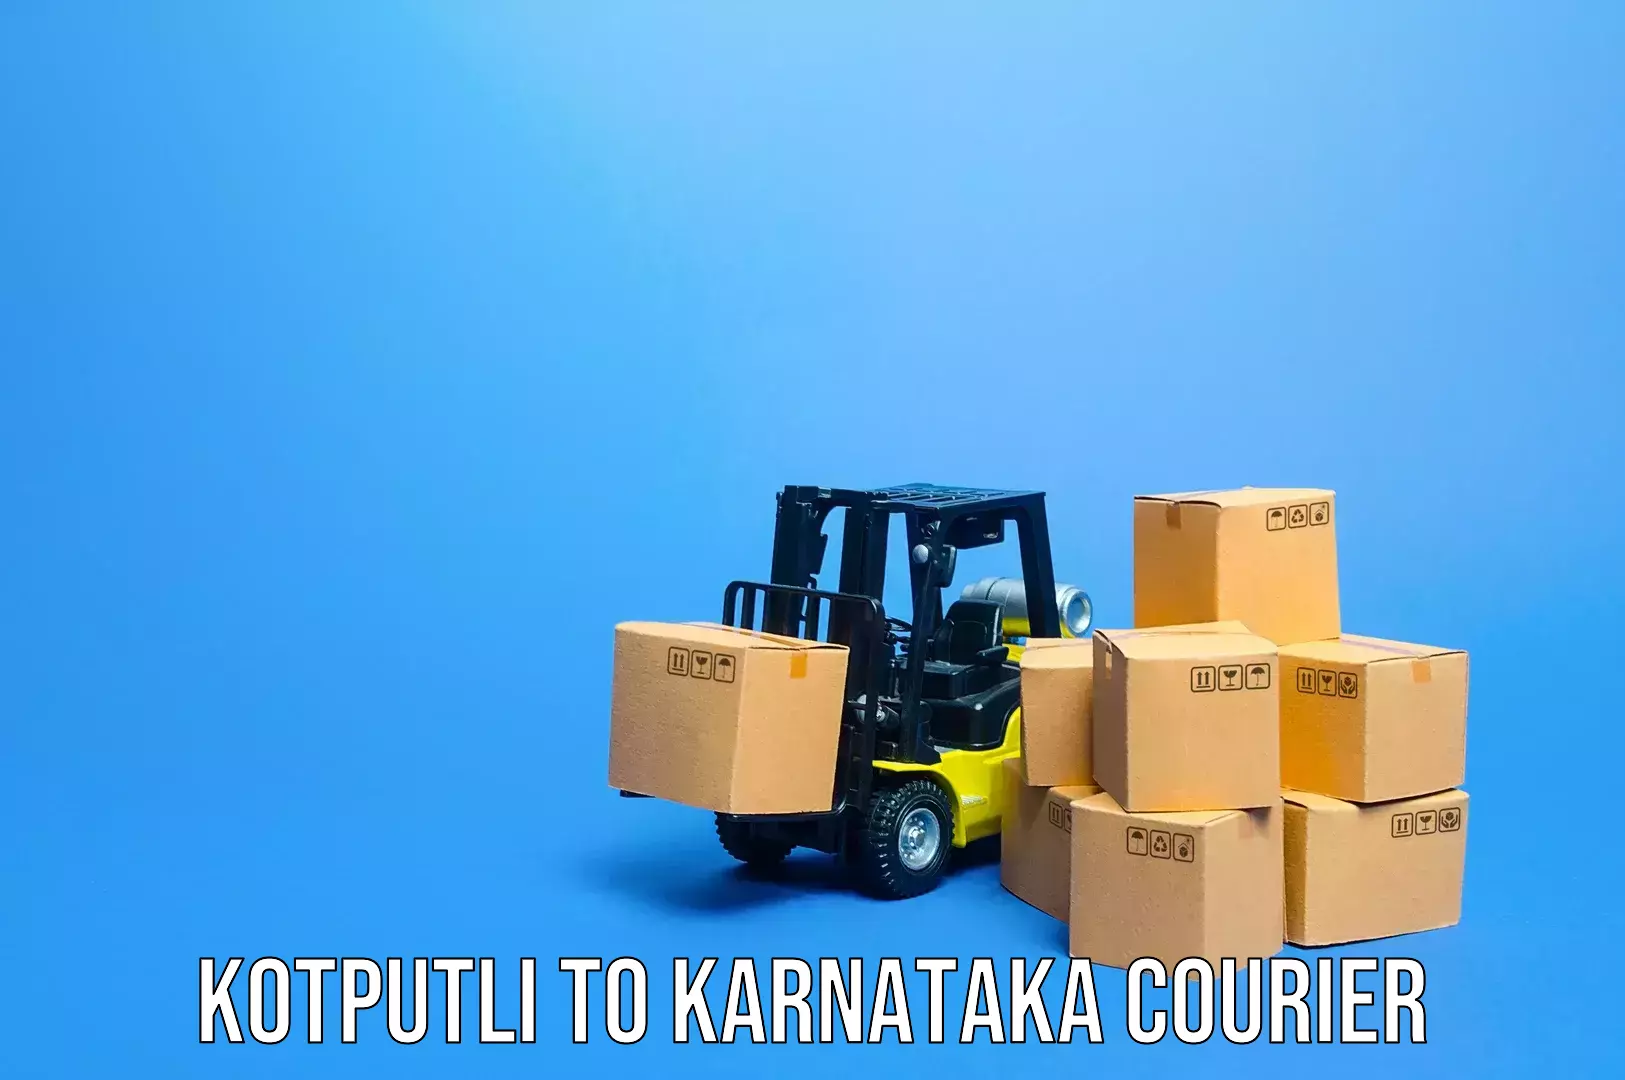 Express baggage shipping Kotputli to Karnataka